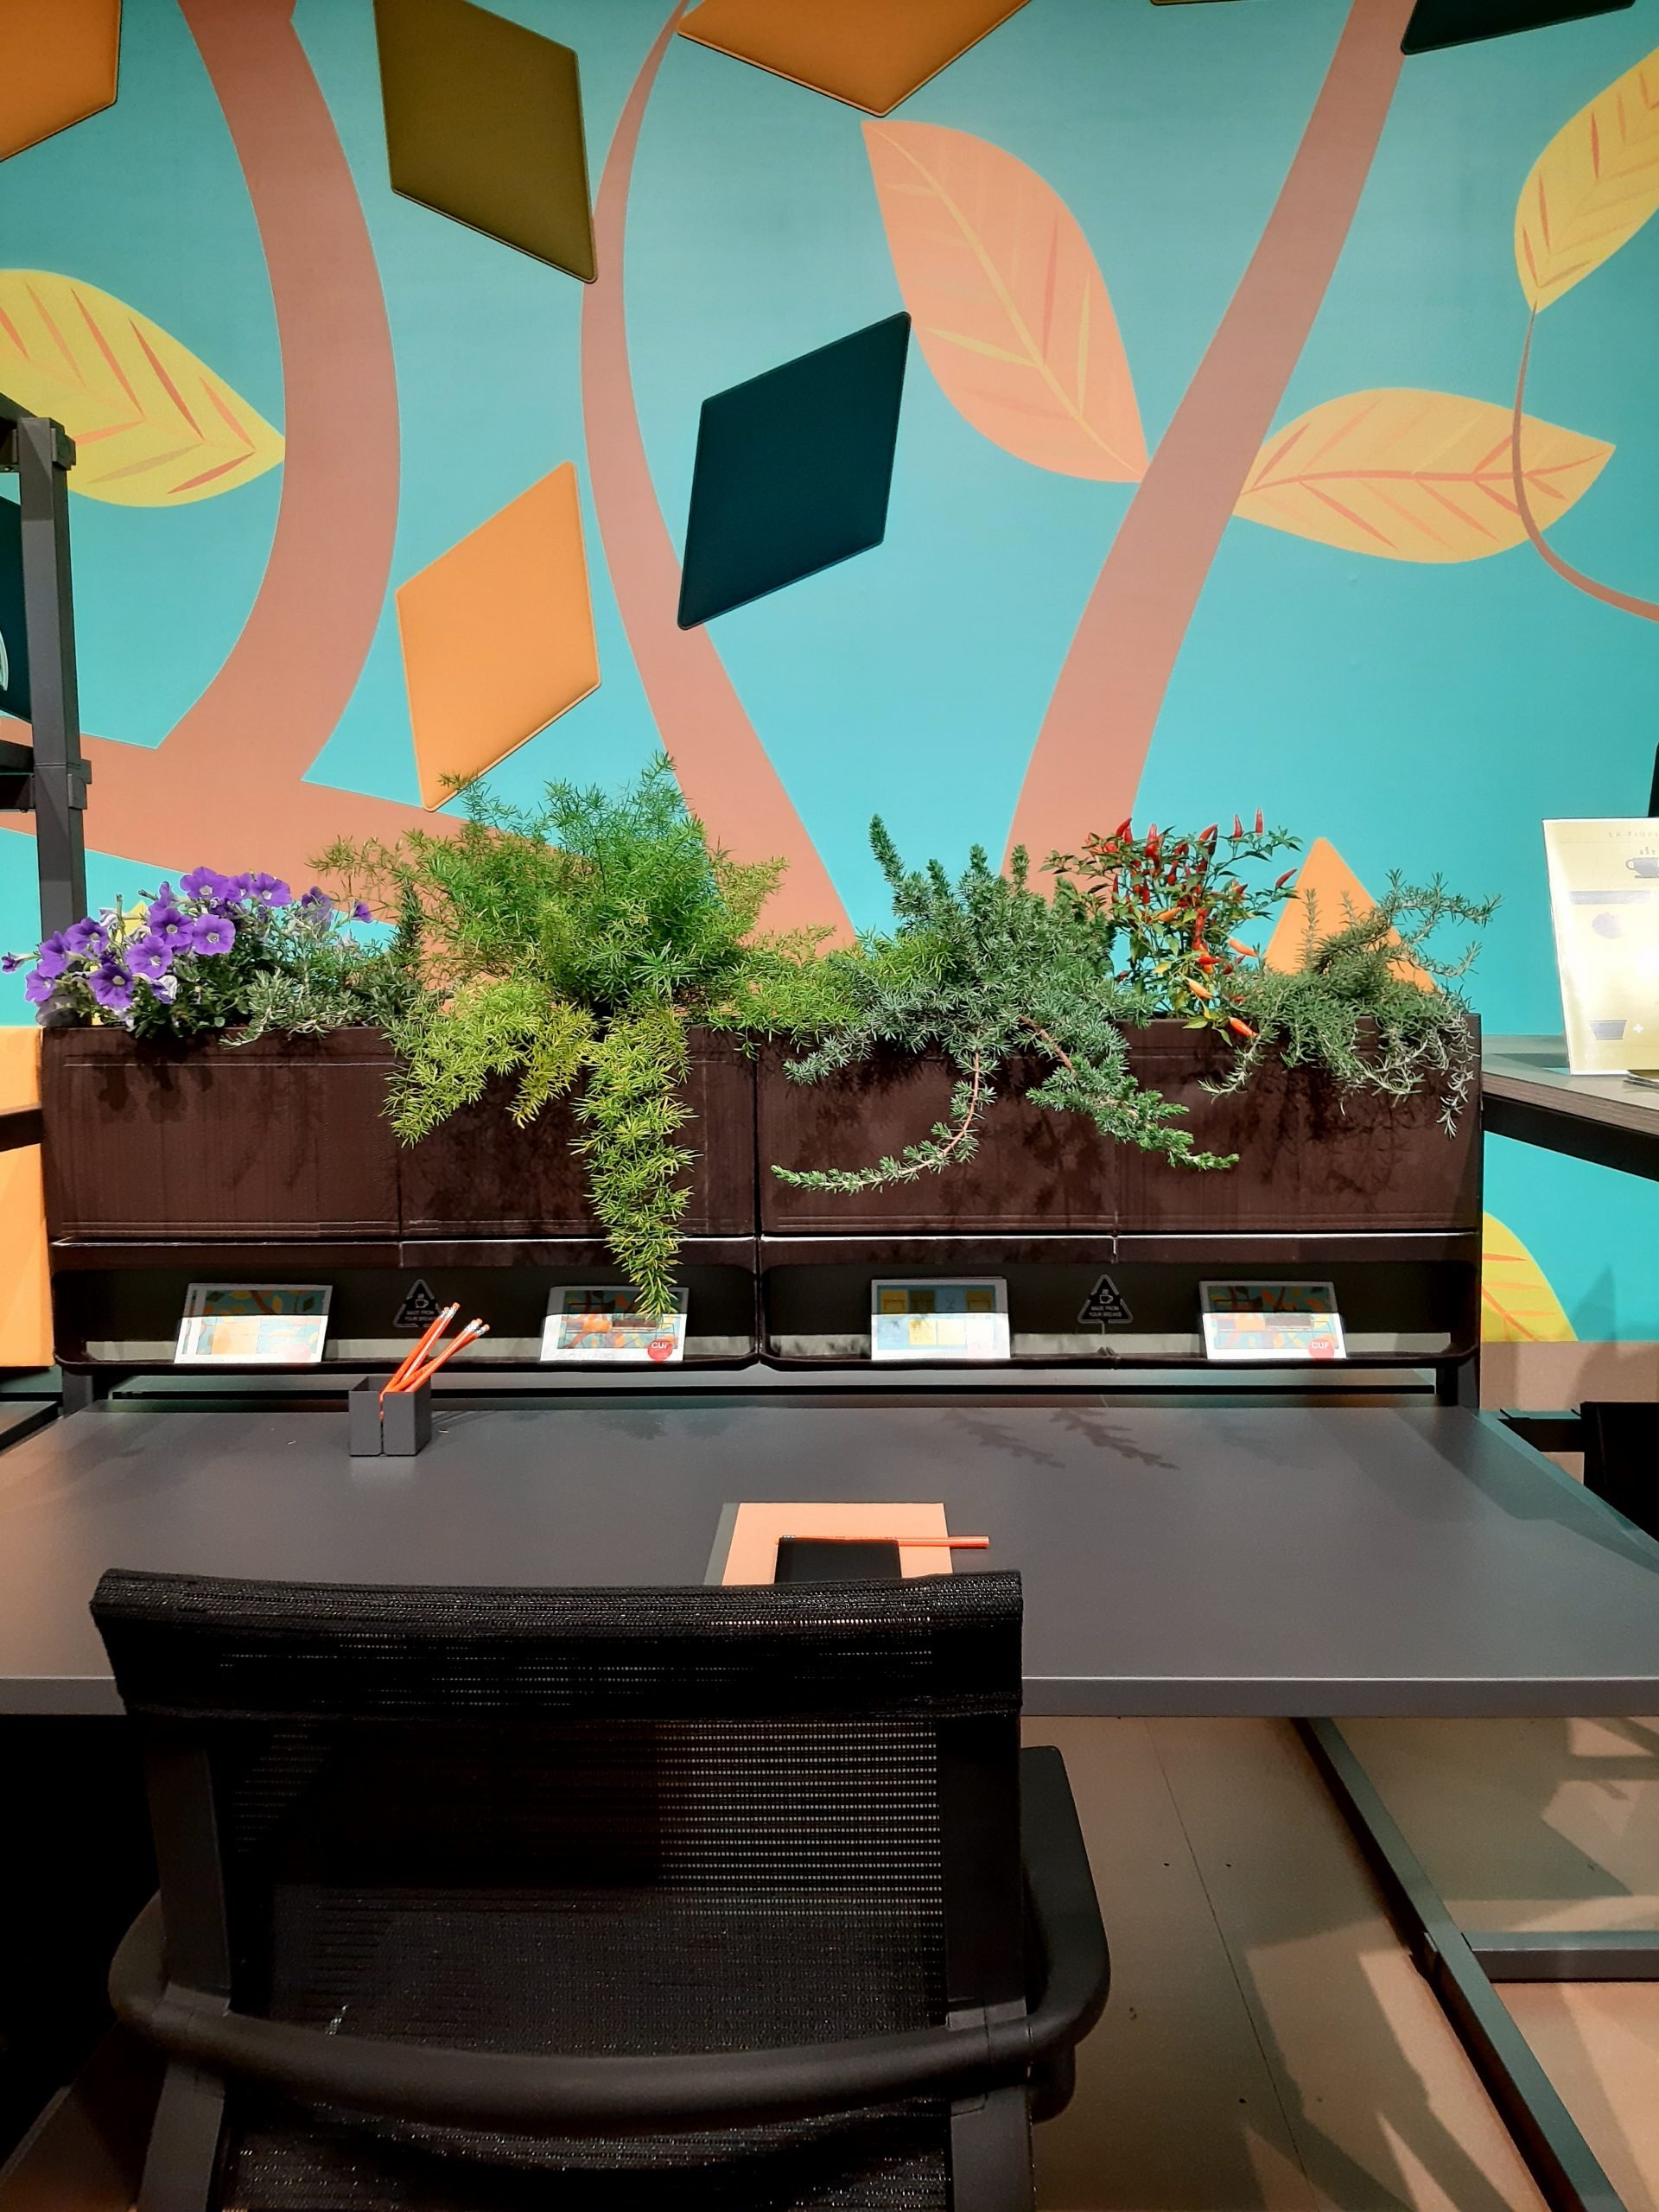 Proposta de home office com jardineira de plantas naturais na parte superior da estação e cadeira ergonômica